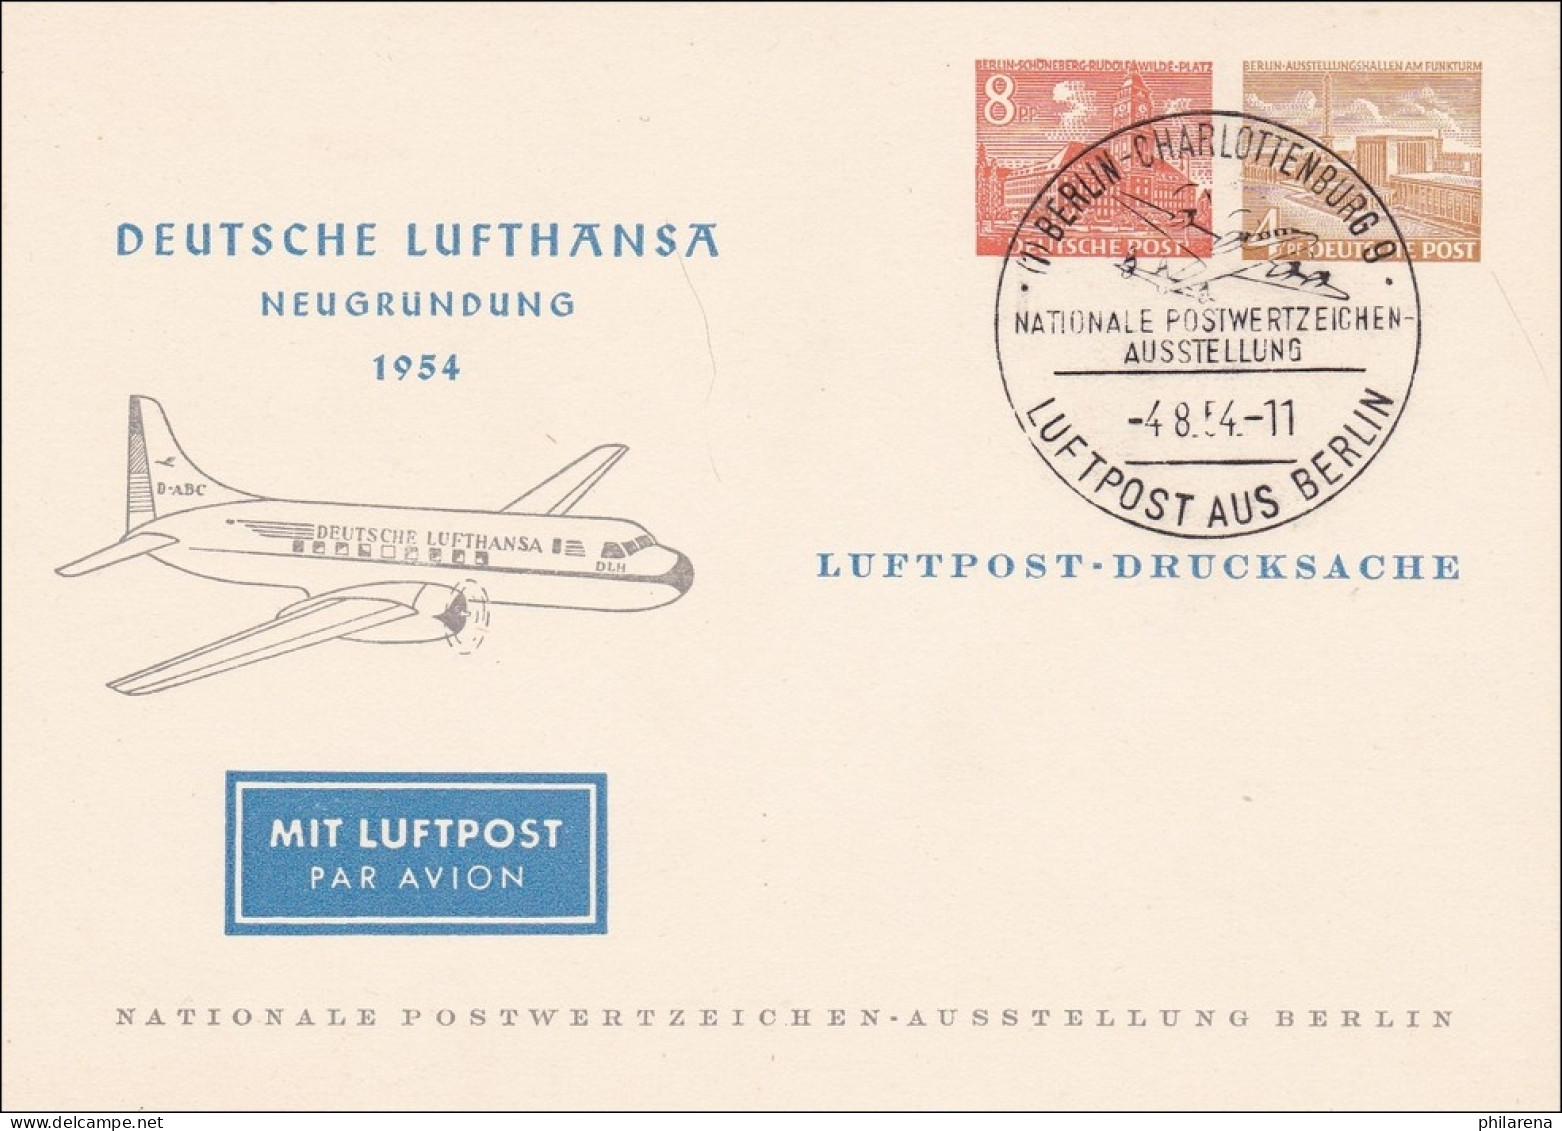 Deutsche Lufthansa 1954 Luftpost Drucksache Briefmarken Ausstellung - Covers & Documents